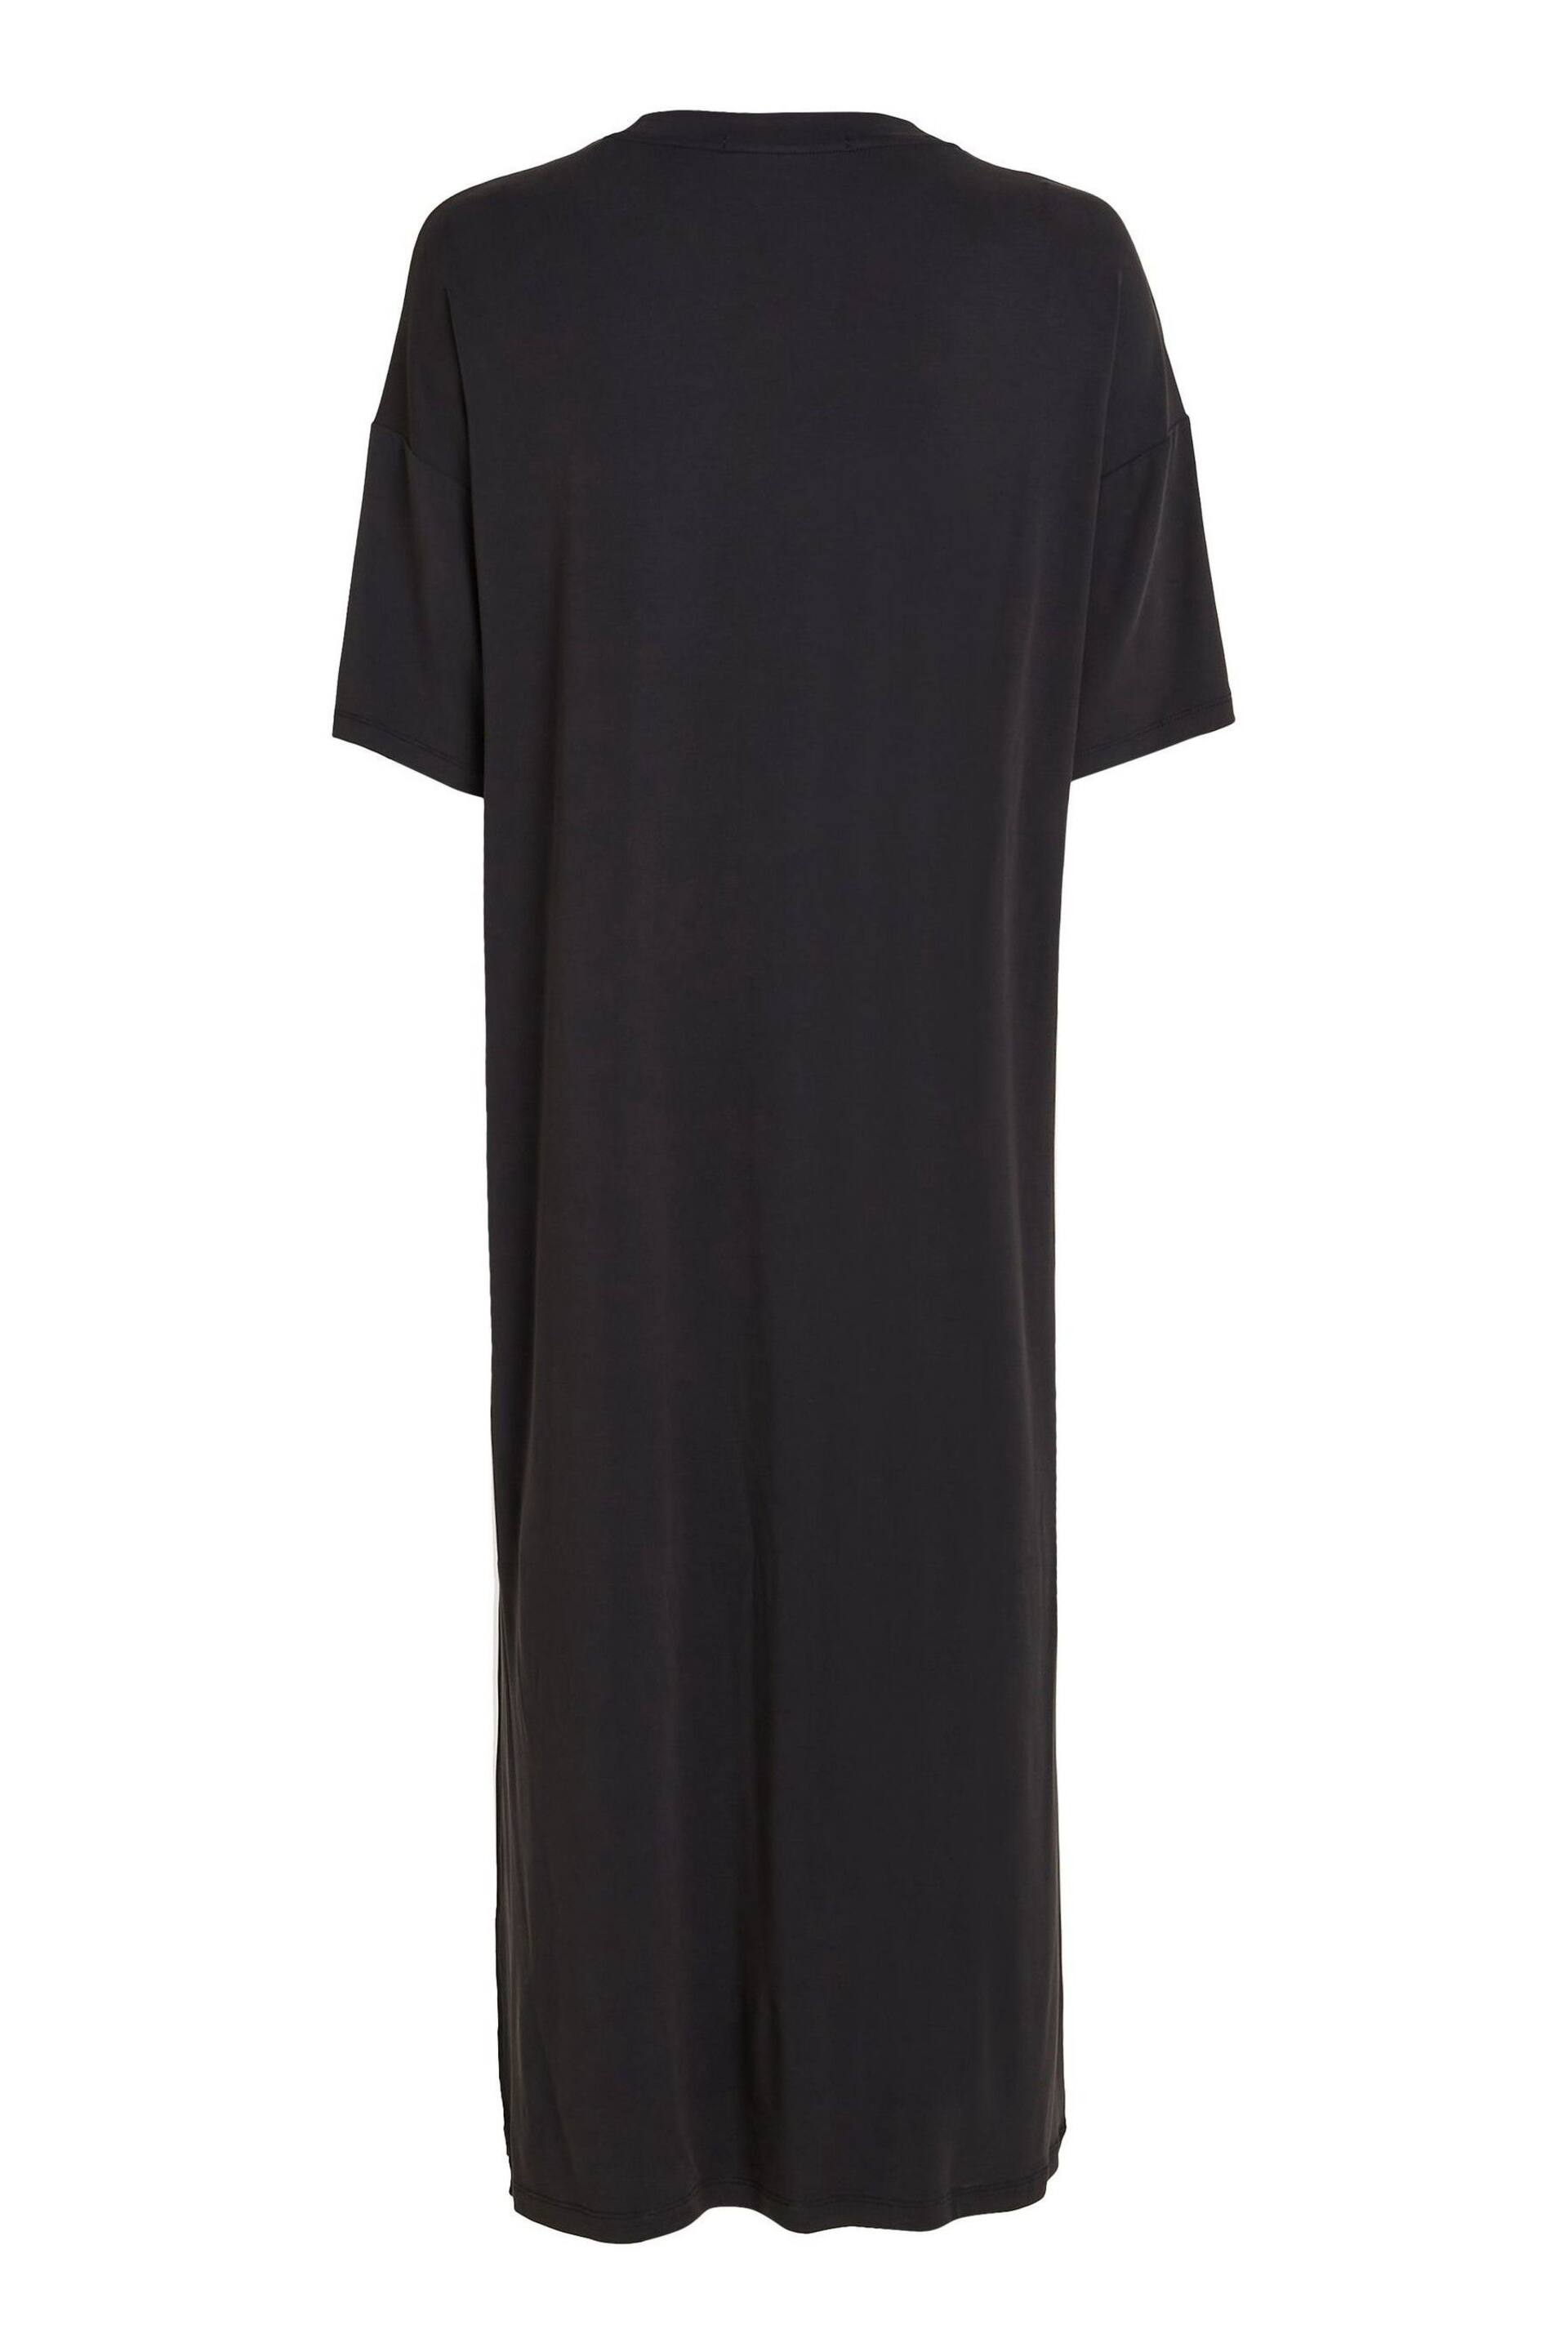 Calvin Klein Black T-Shirt Dress - Image 5 of 6